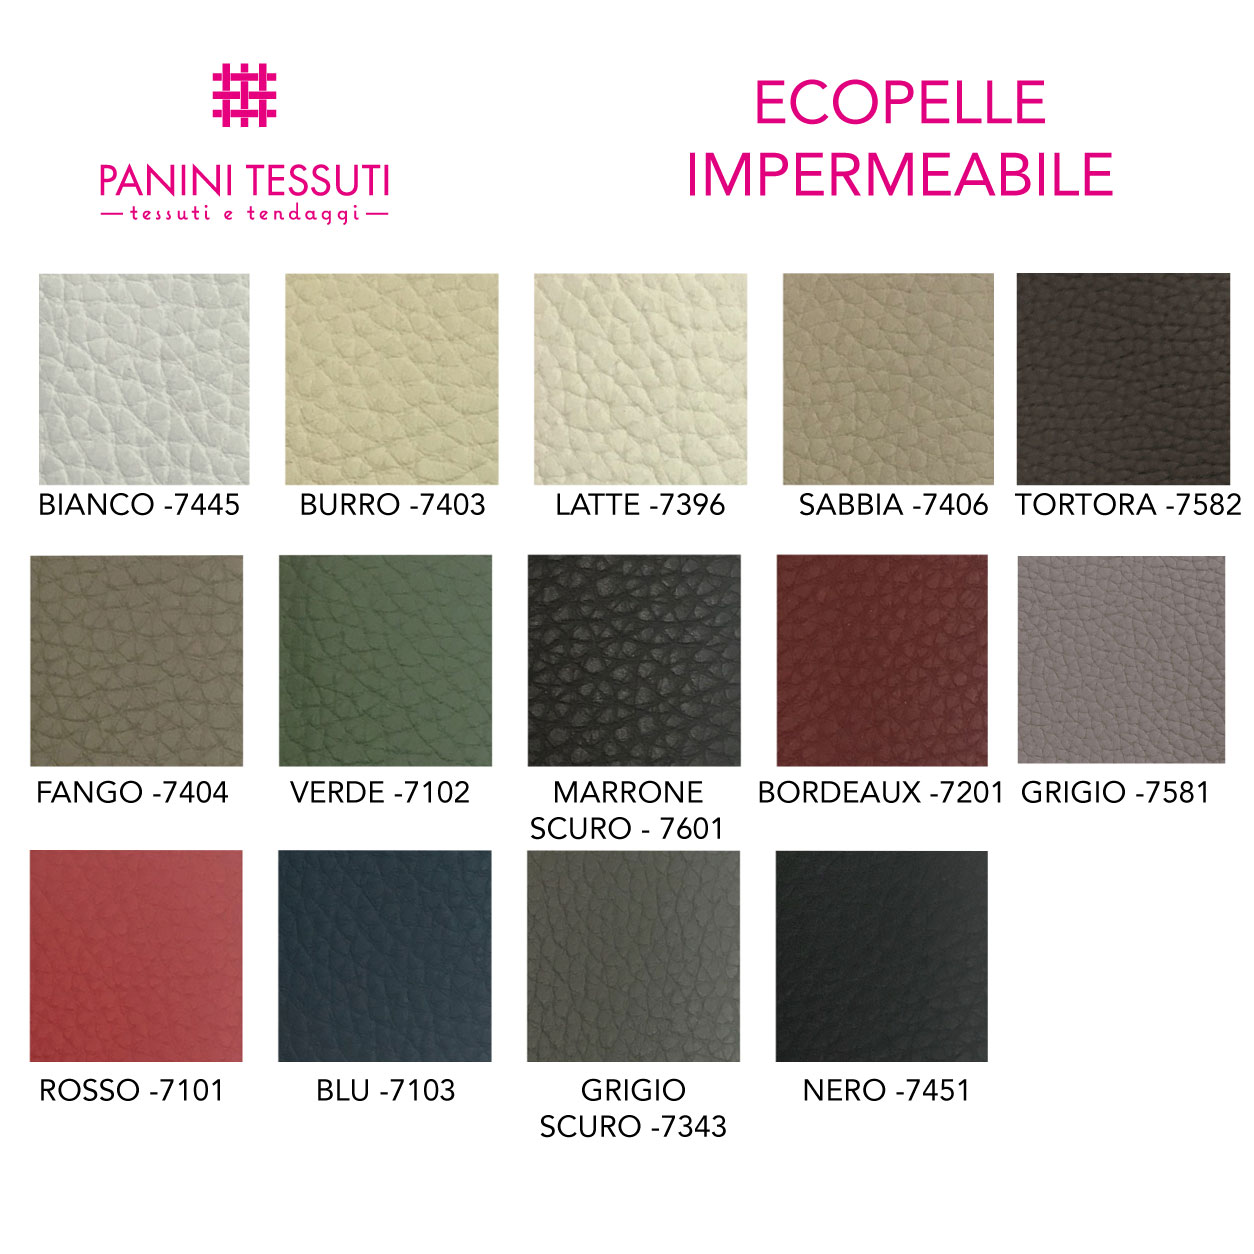 Ecopelle impermeabile cartella colore shopware (12)